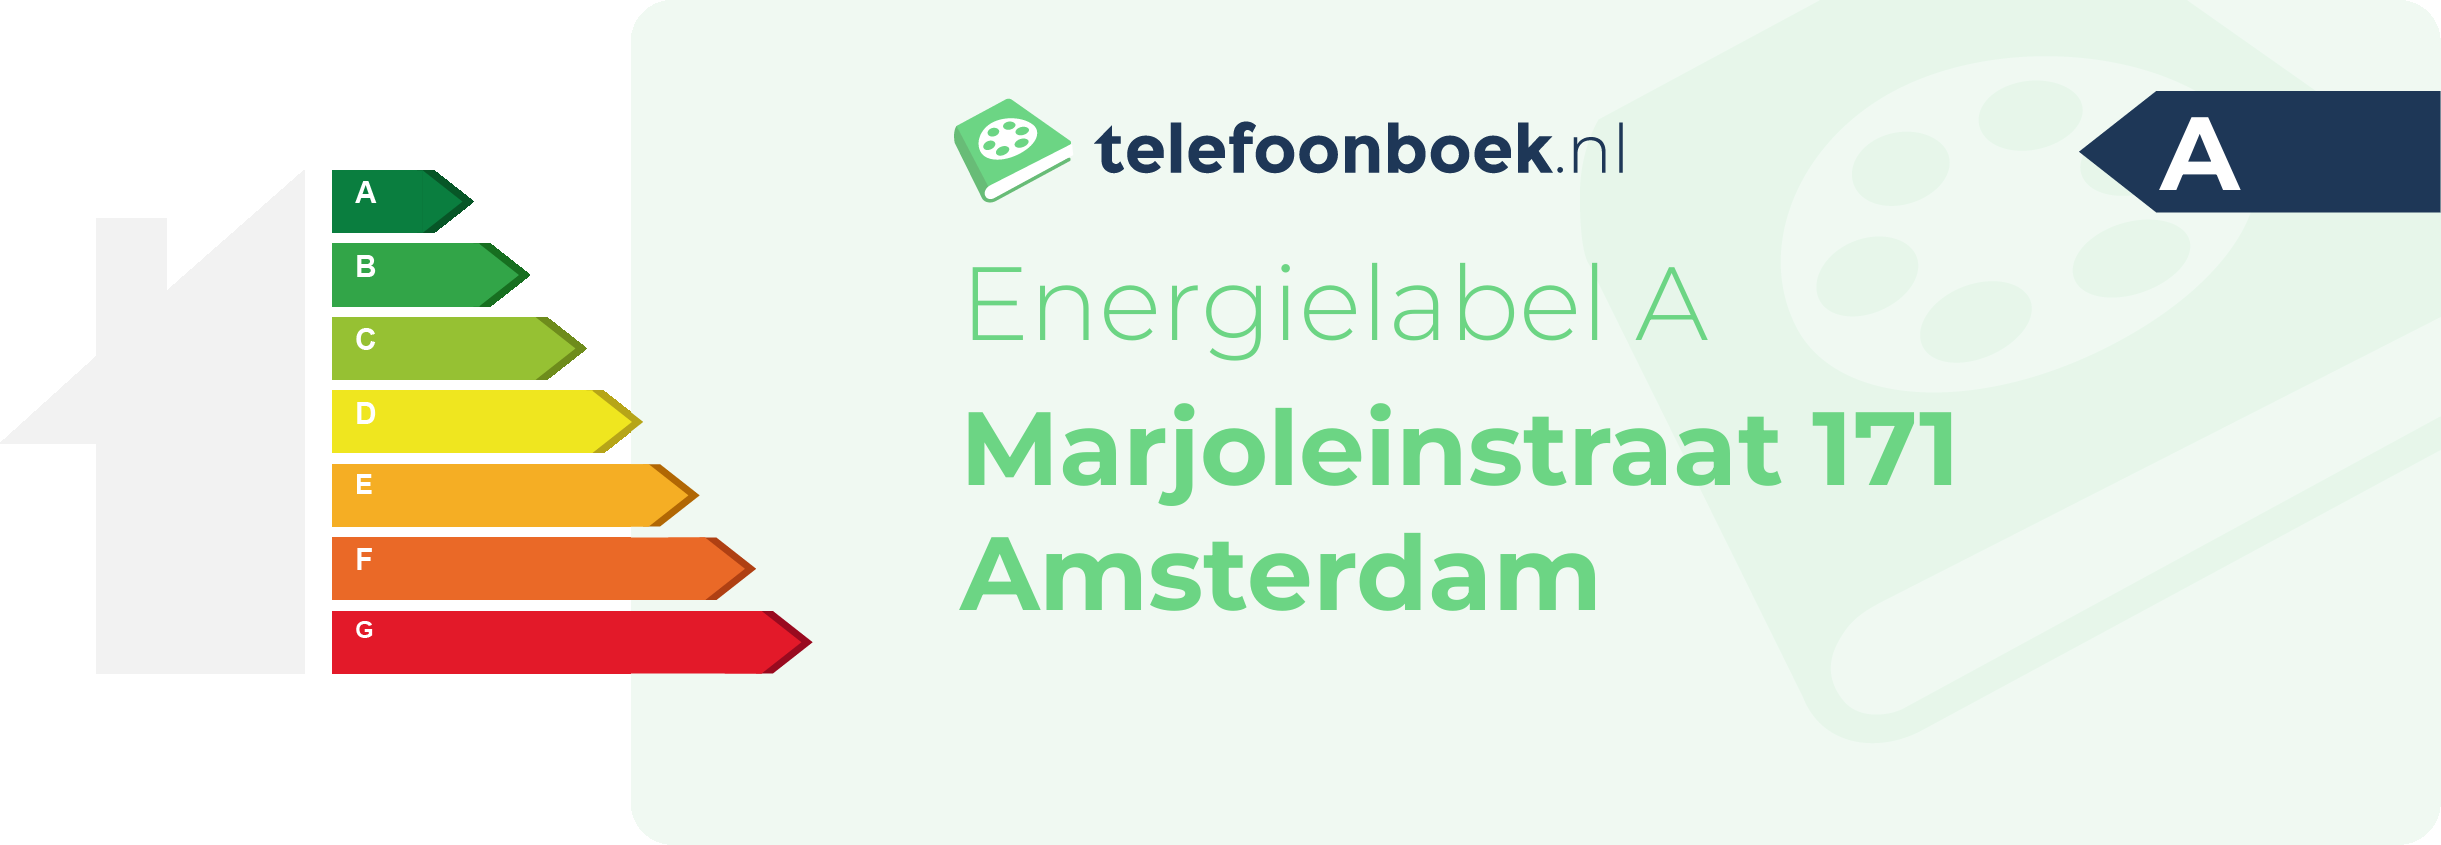 Energielabel Marjoleinstraat 171 Amsterdam